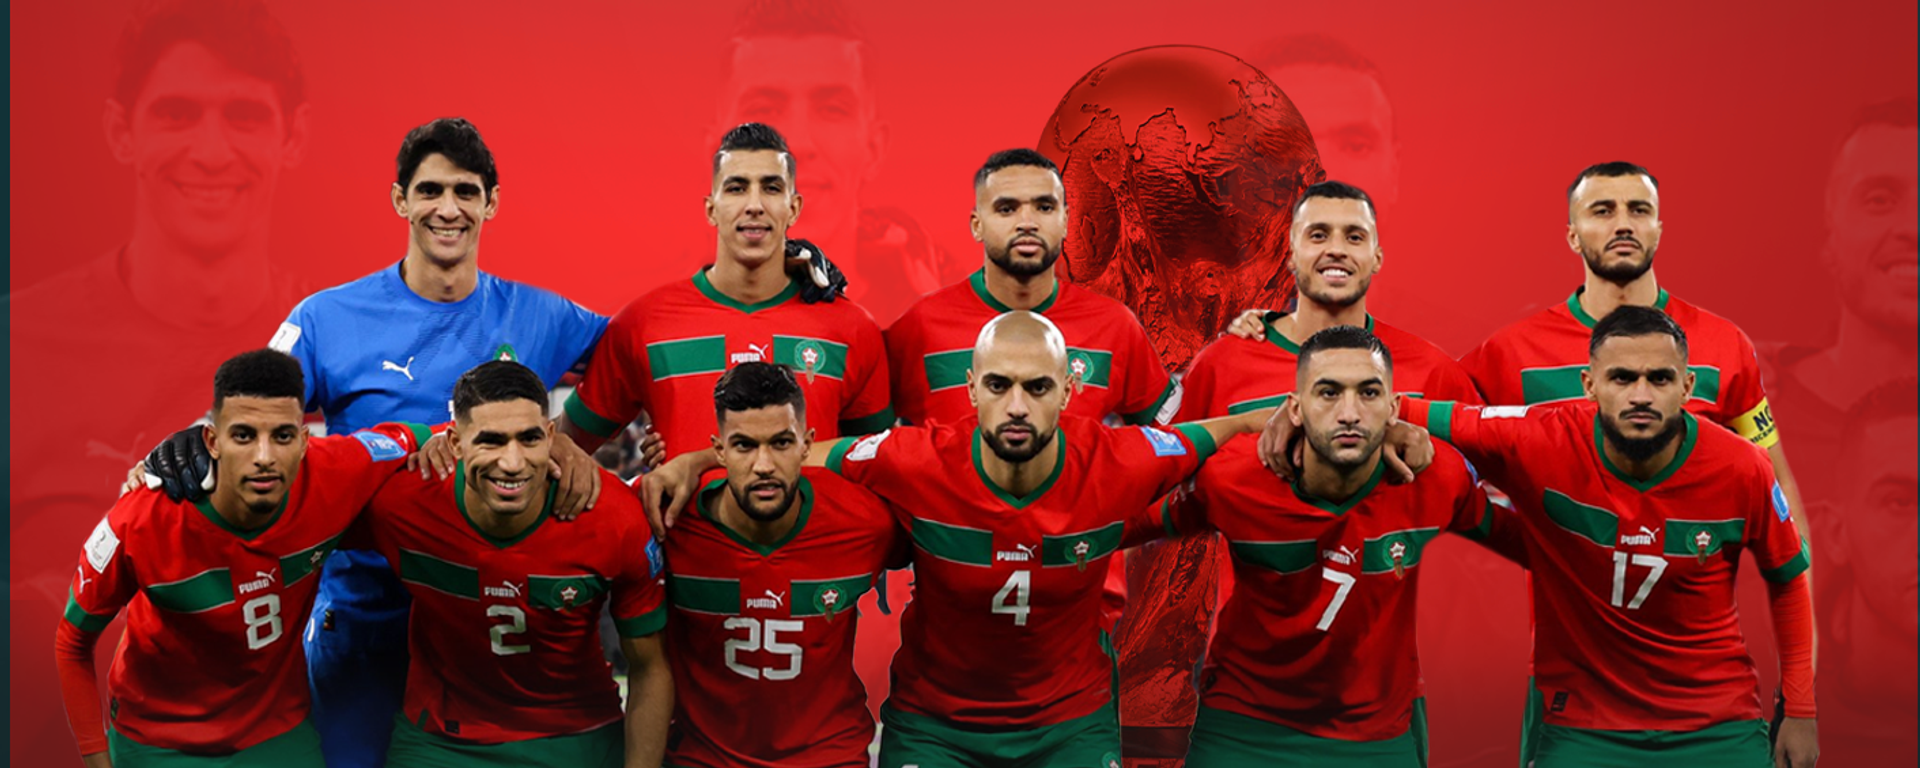 إنفوجراف: كيف غير المغرب ترتيب أفريقيا في بطولات كأس العالم منذ 1990؟ - سبوتنيك عربي, 1920, 14.12.2022